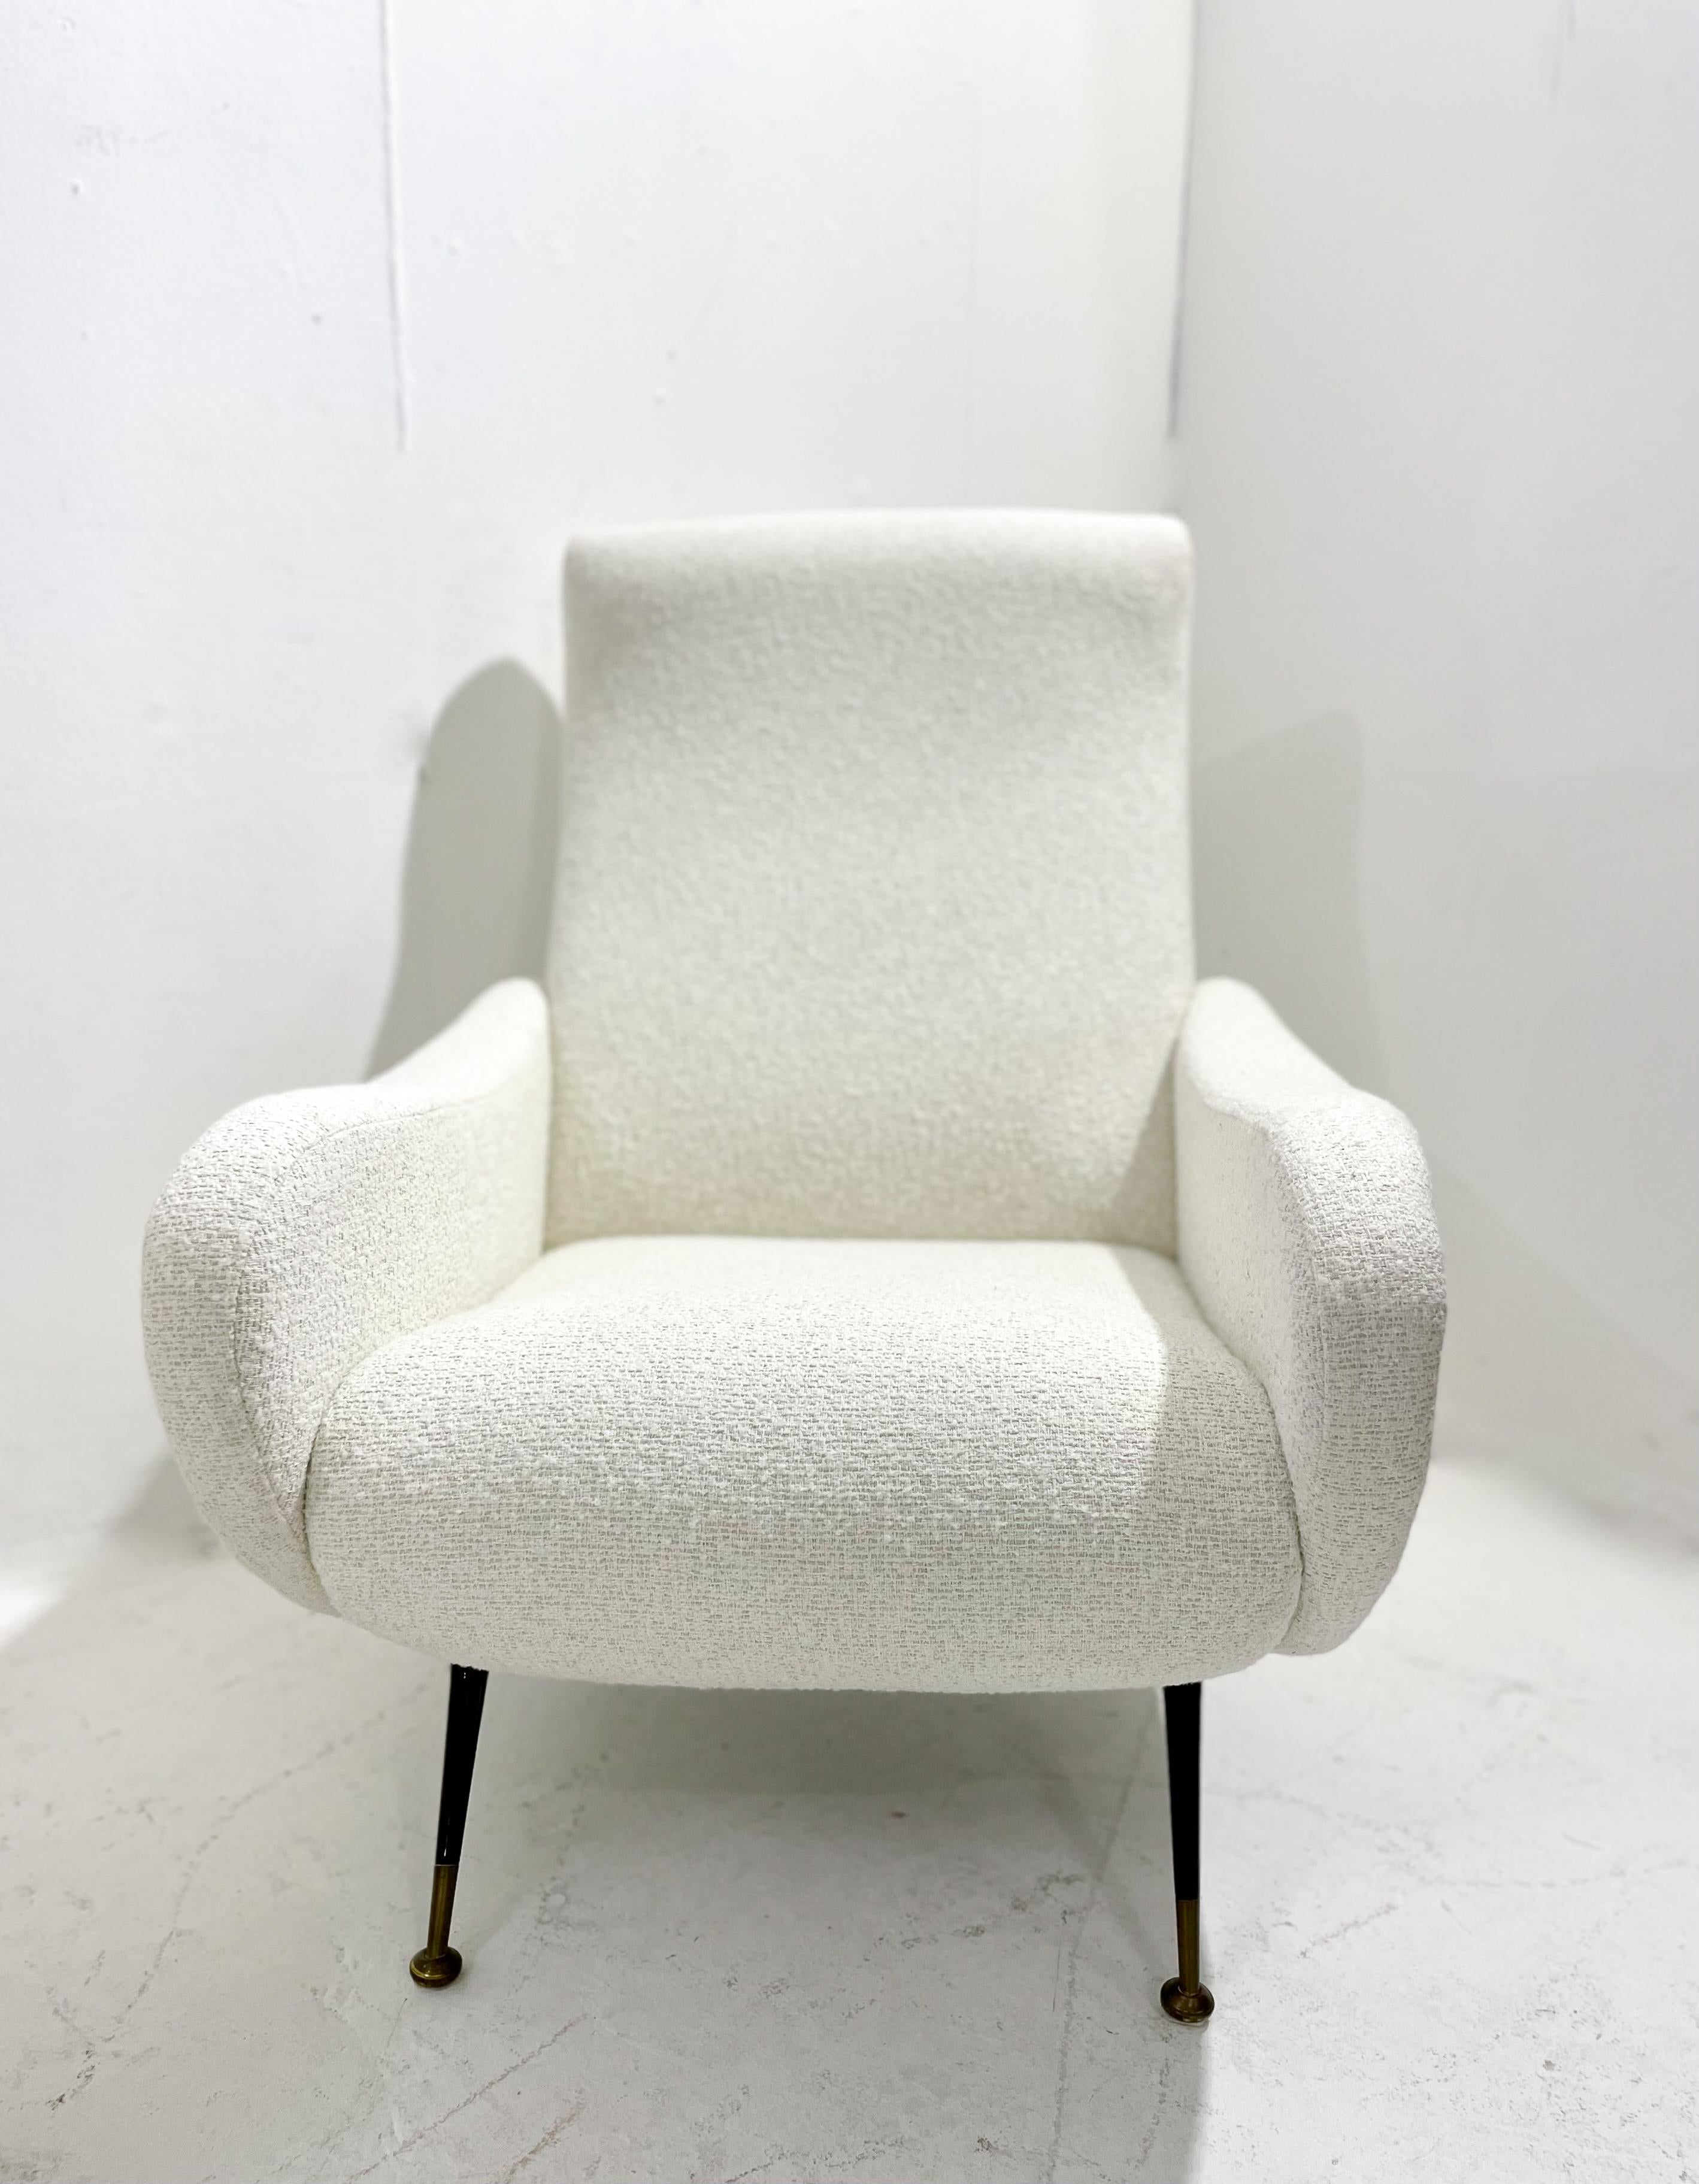 Paire de fauteuils italiens de style moderne du milieu du siècle, tissu blanc, années 1950.
Rembourrage neuf.